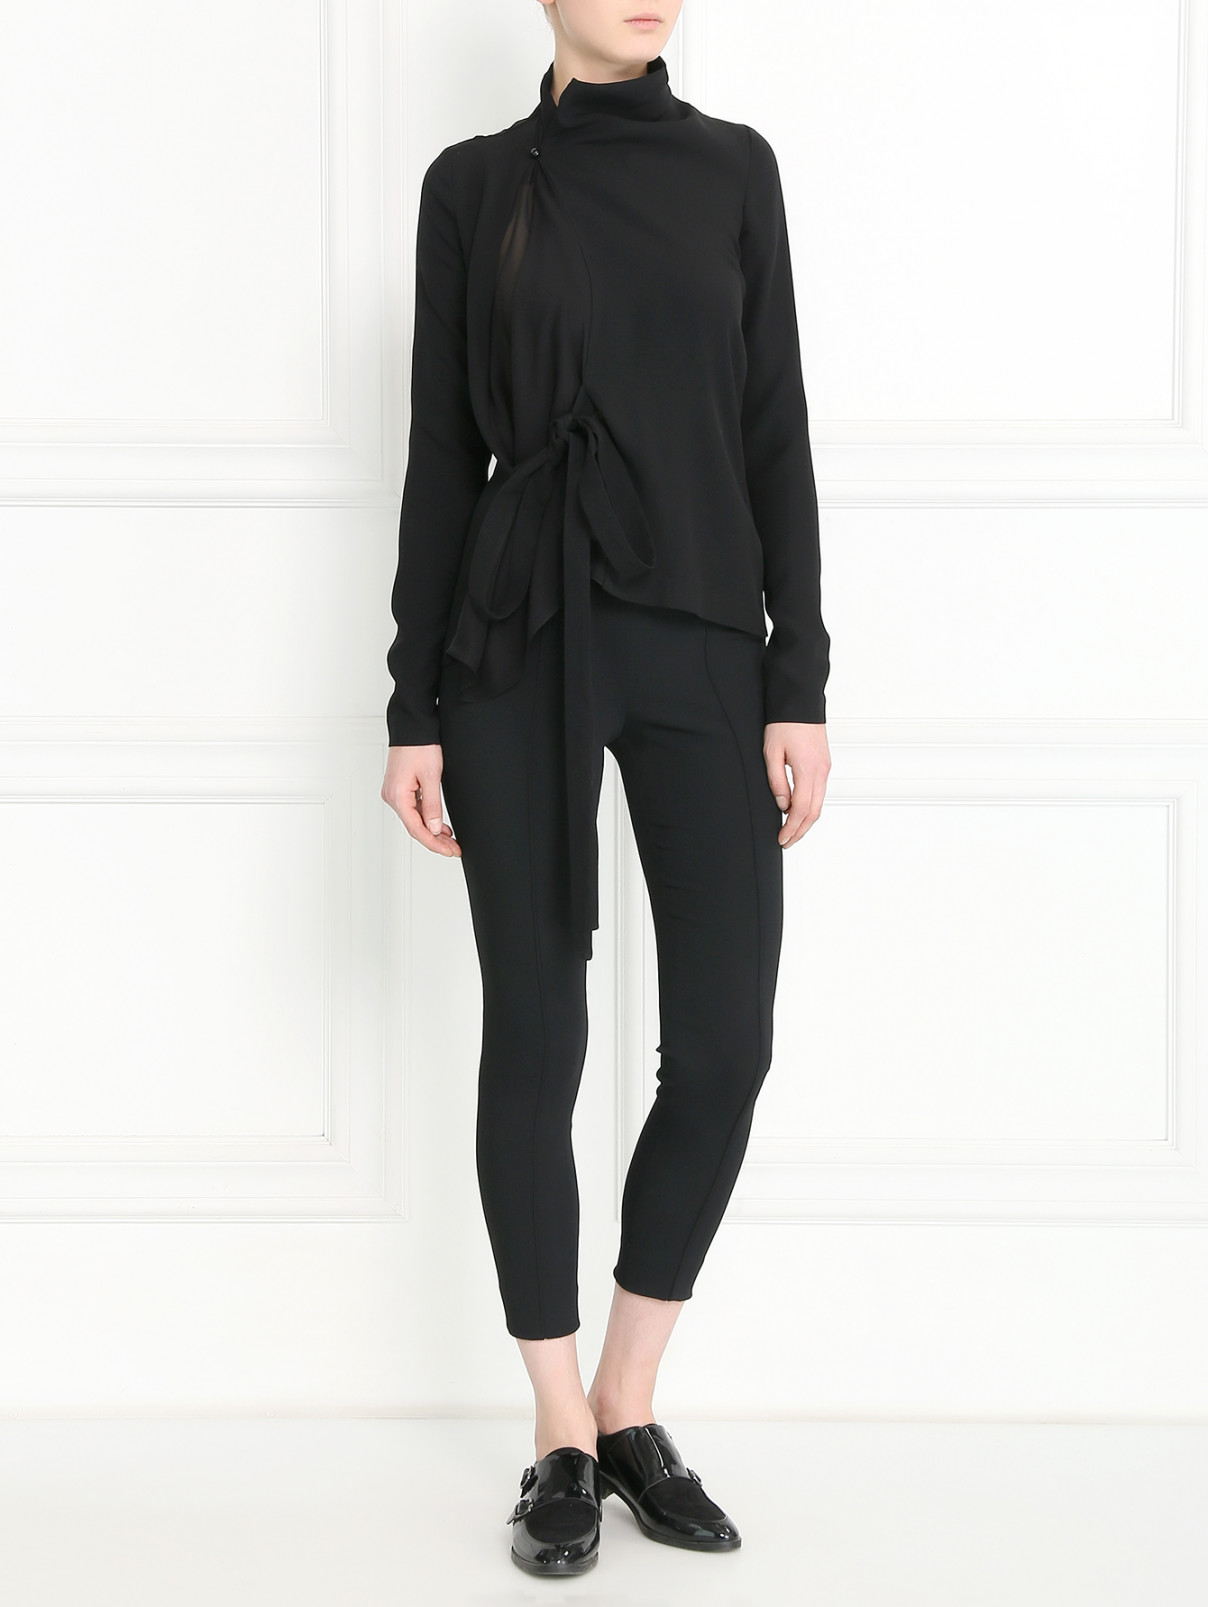 Однотонная блуза с драпировкой и поясом Jean Paul Gaultier  –  Модель Общий вид  – Цвет:  Черный